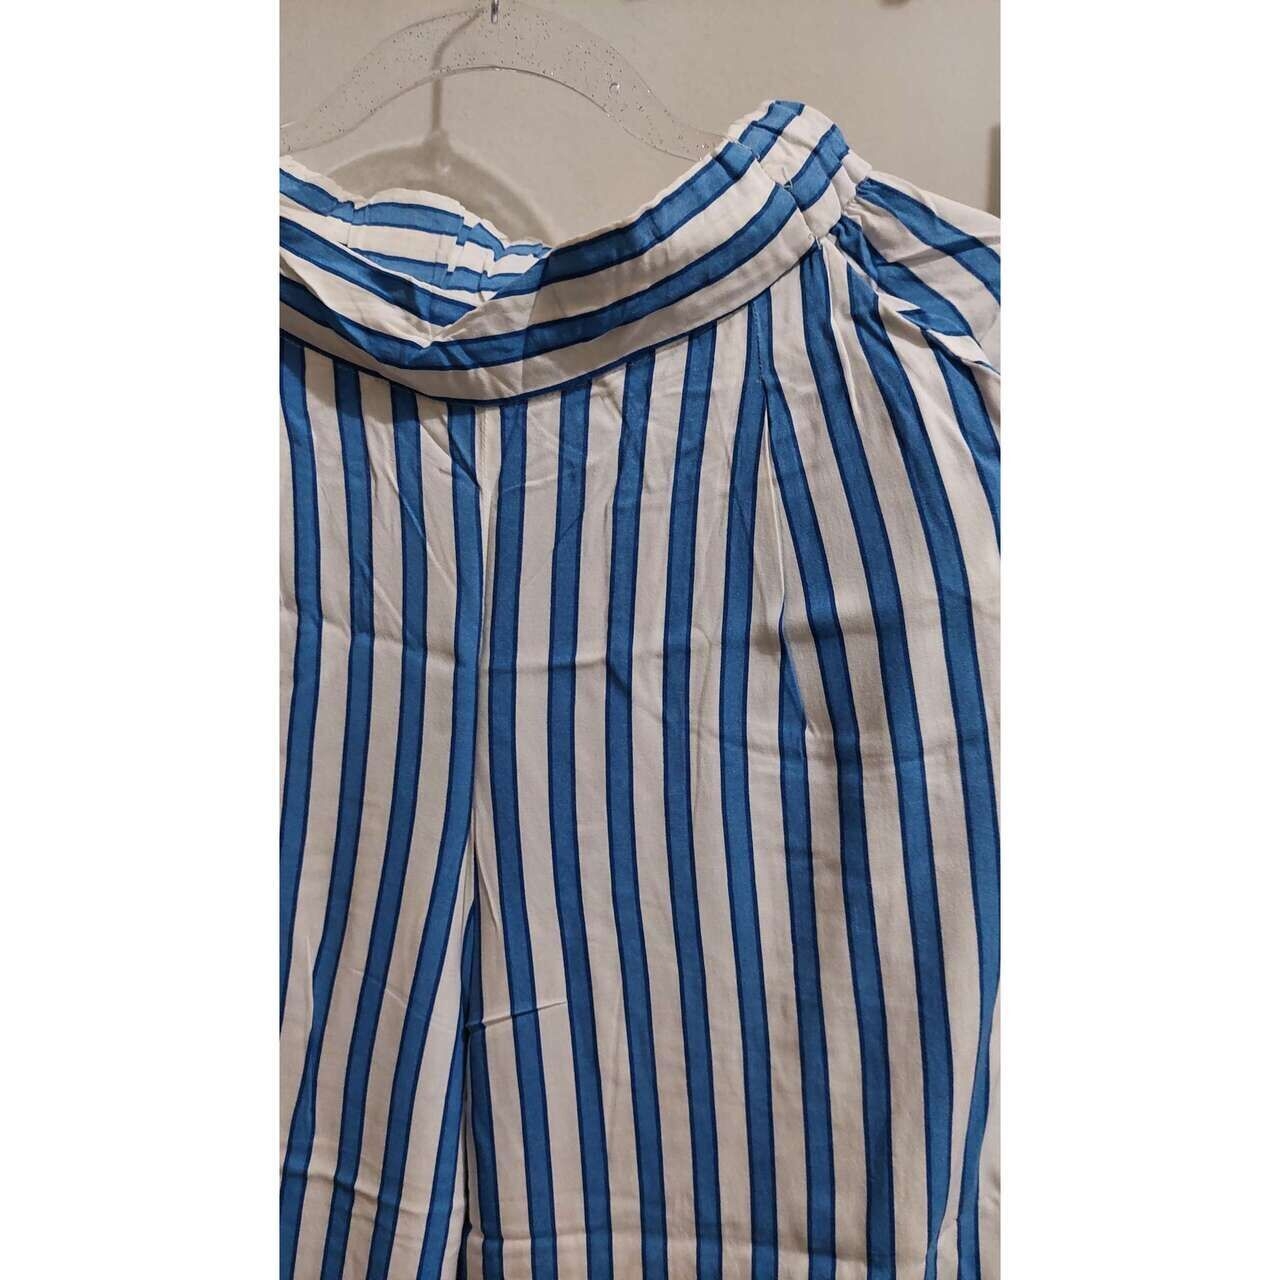 H&M Blue & Broken White Stripes Long Pants